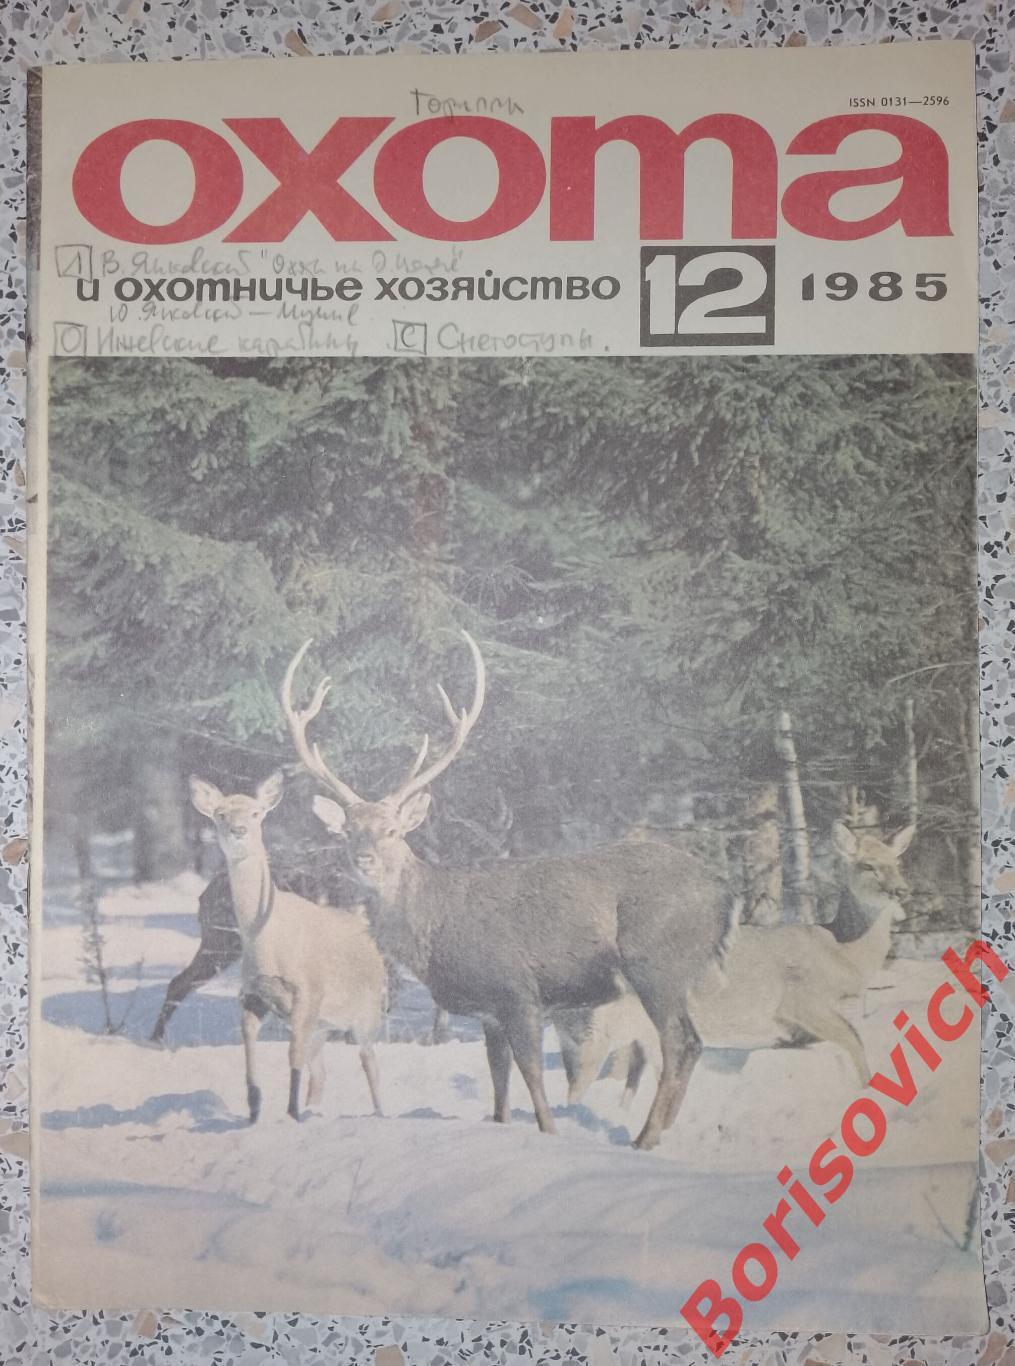 ОХОТА и охотничье хозяйство N 12. 1985